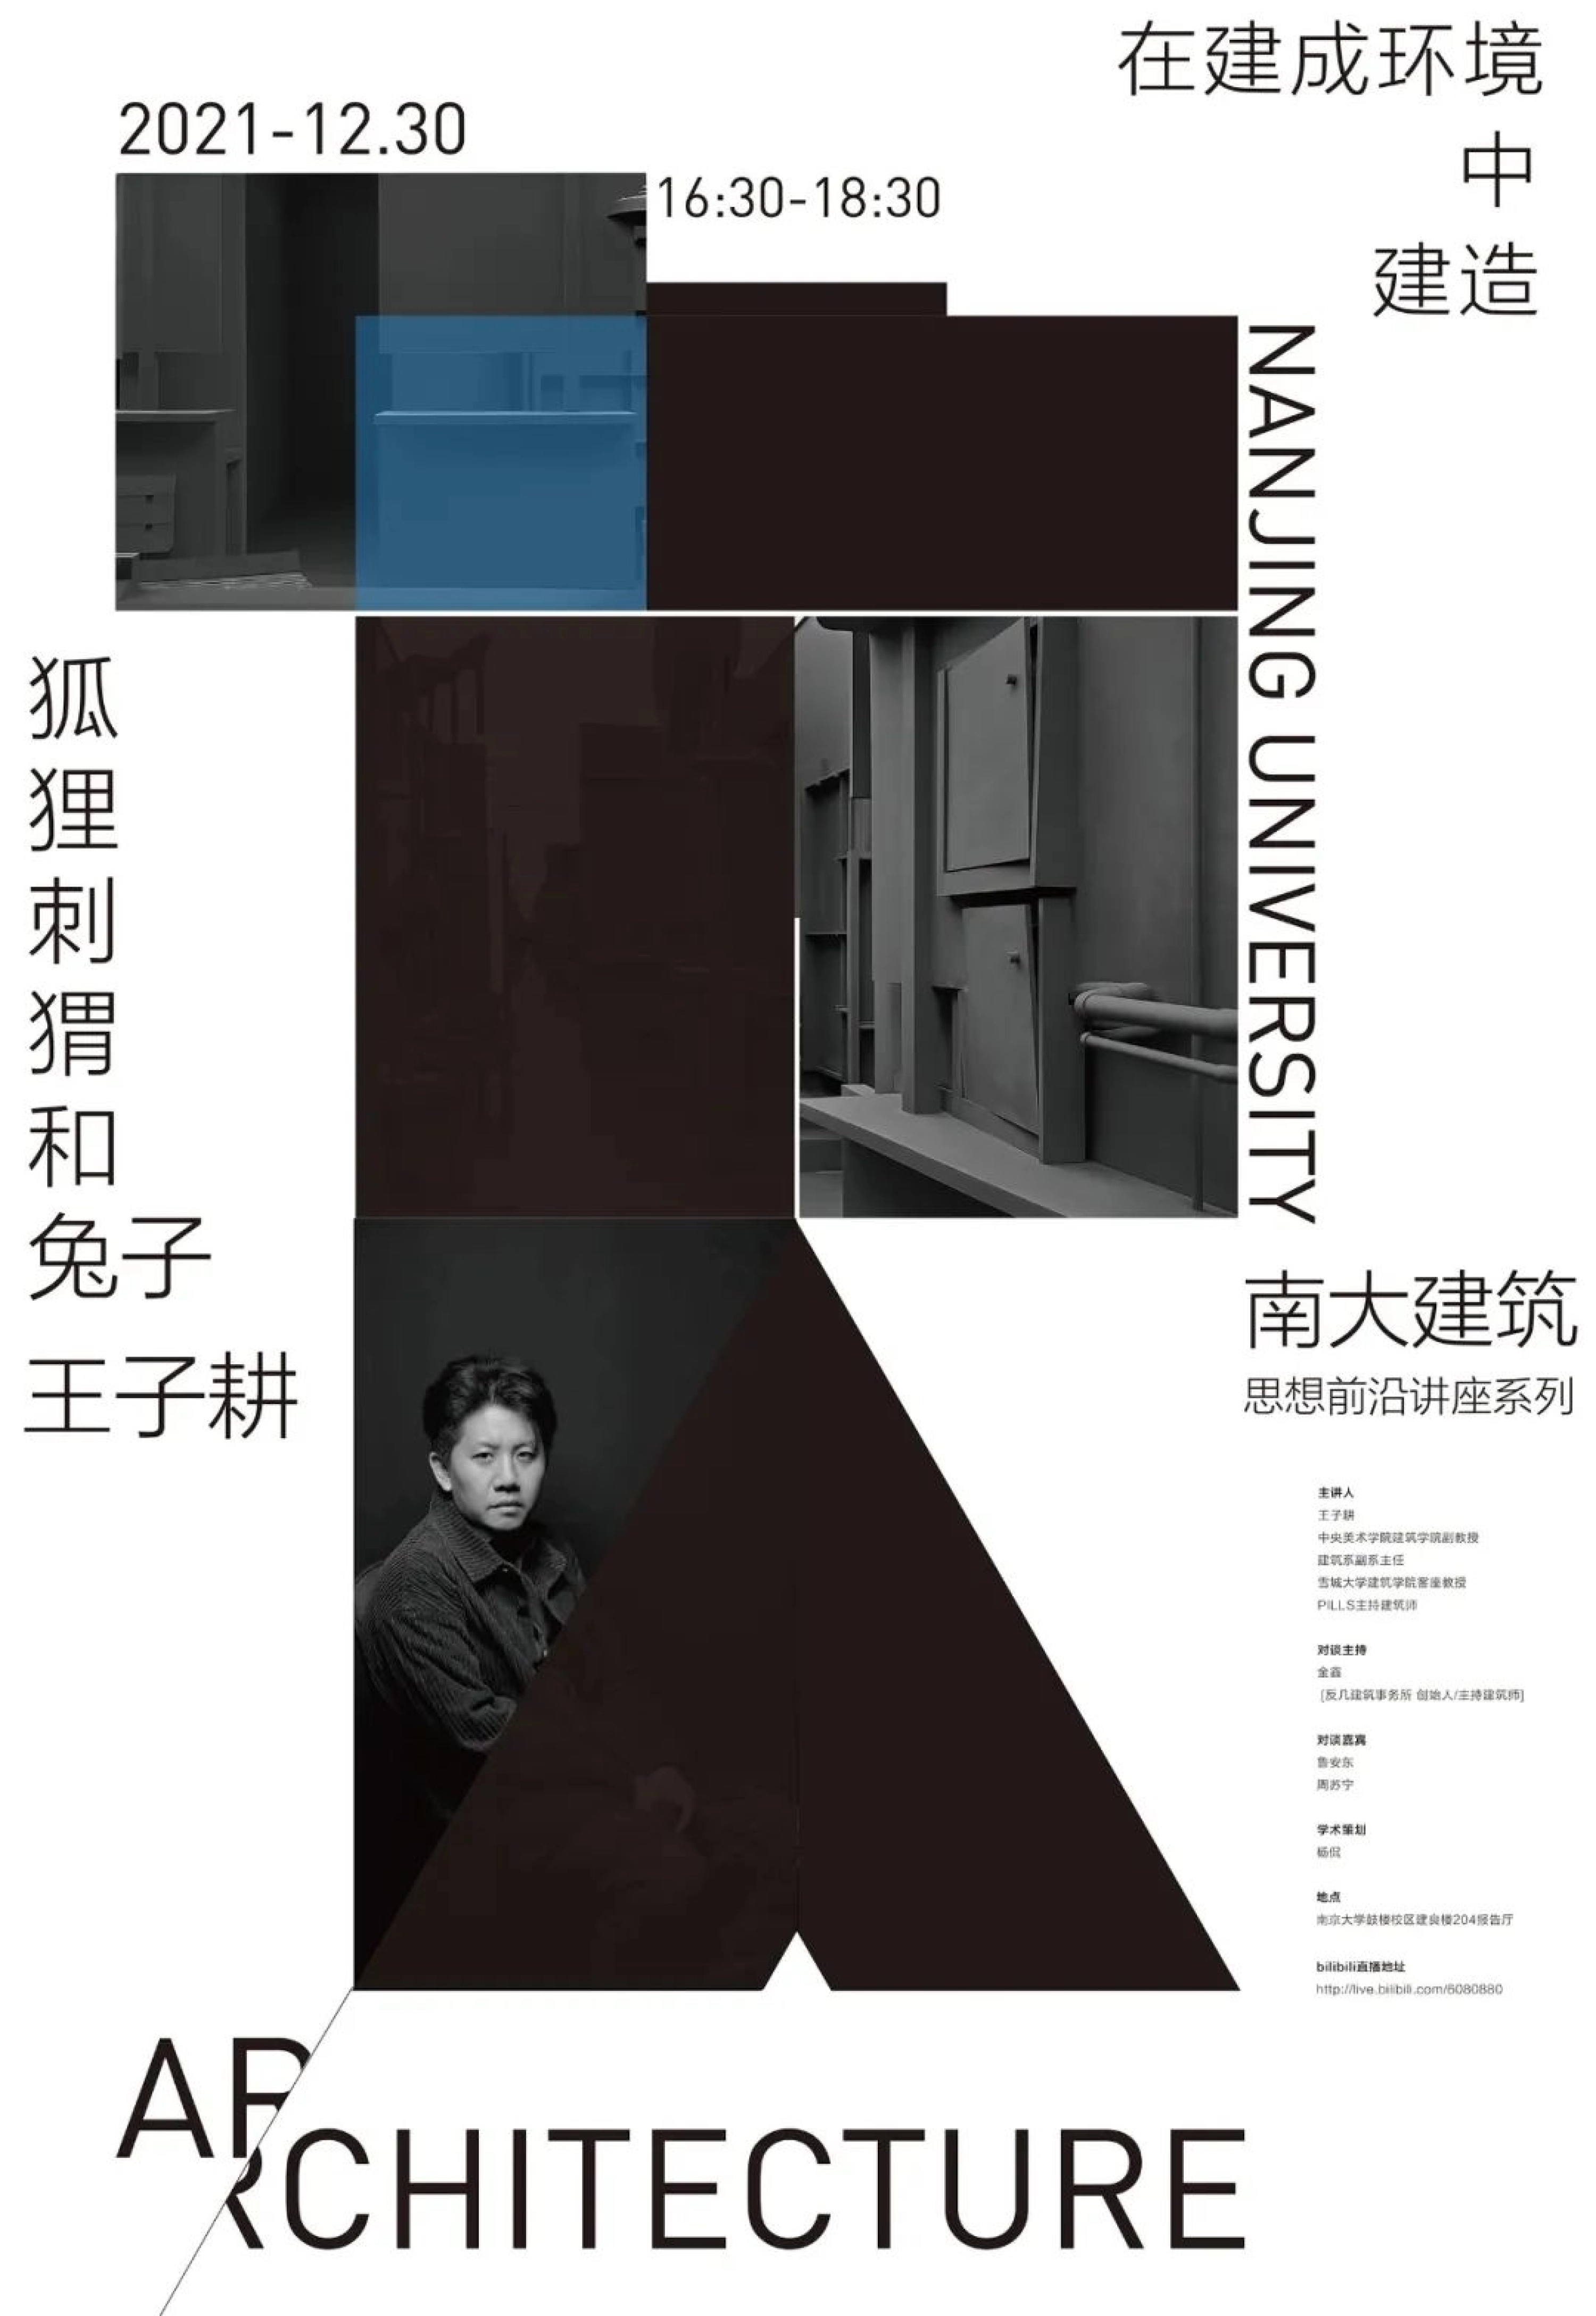 王子耕は南京大学に招かれ「築かれた環境における築く」を講演